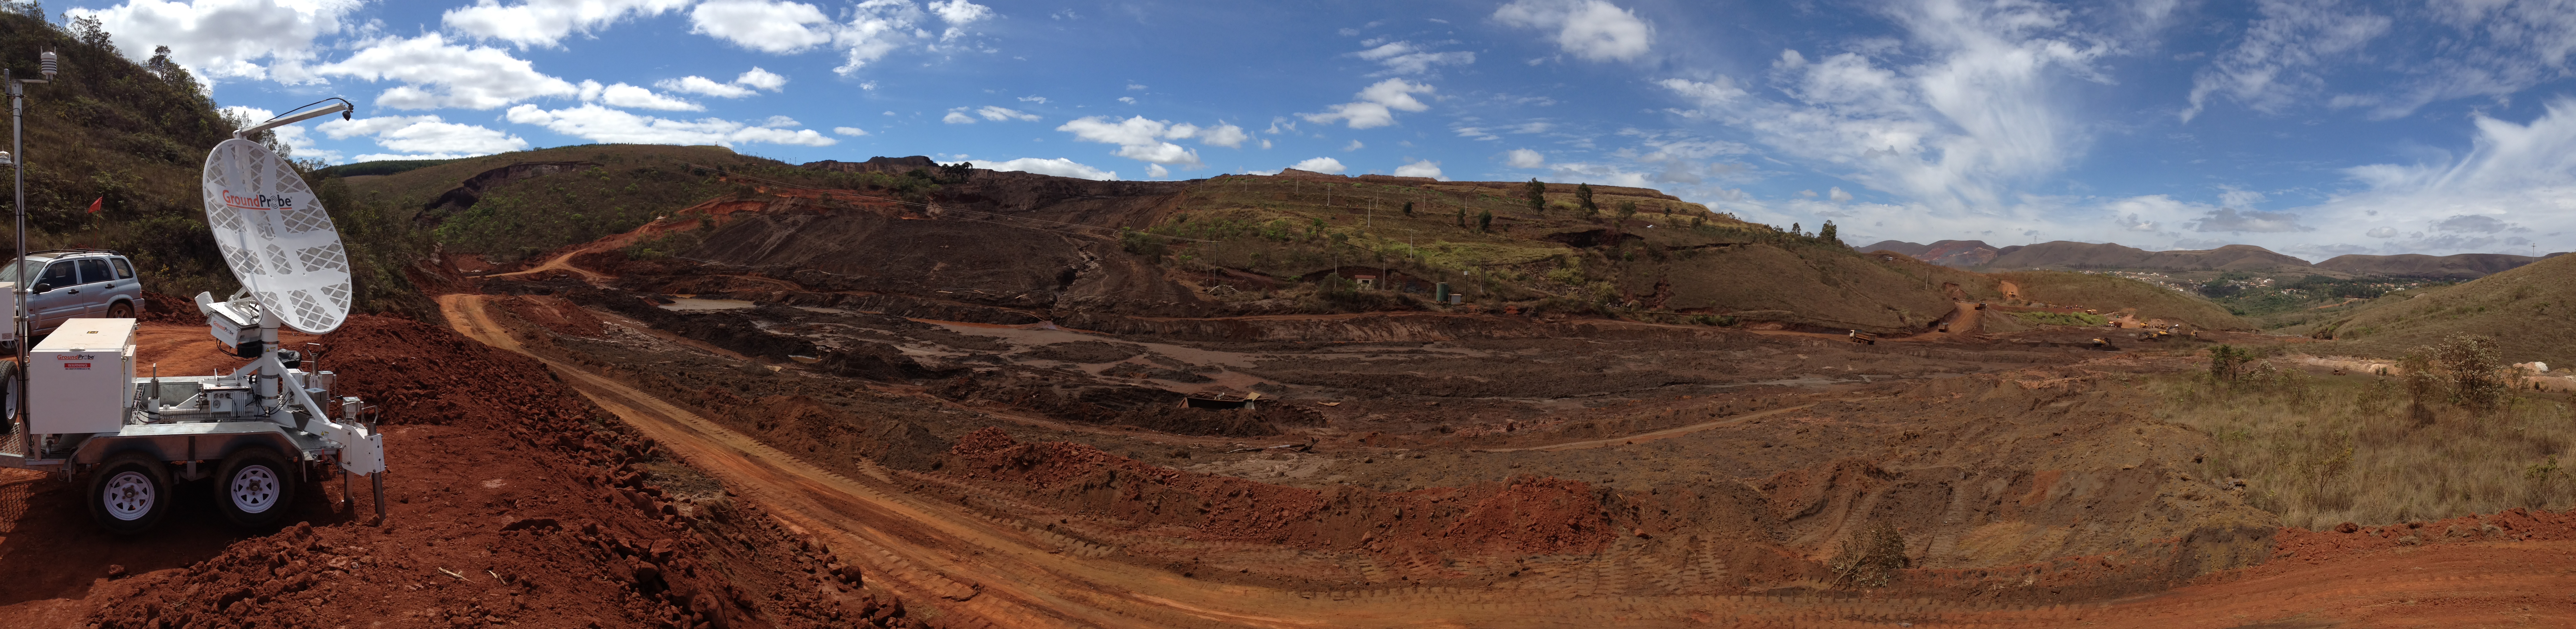 Herculano Mine in Brazil